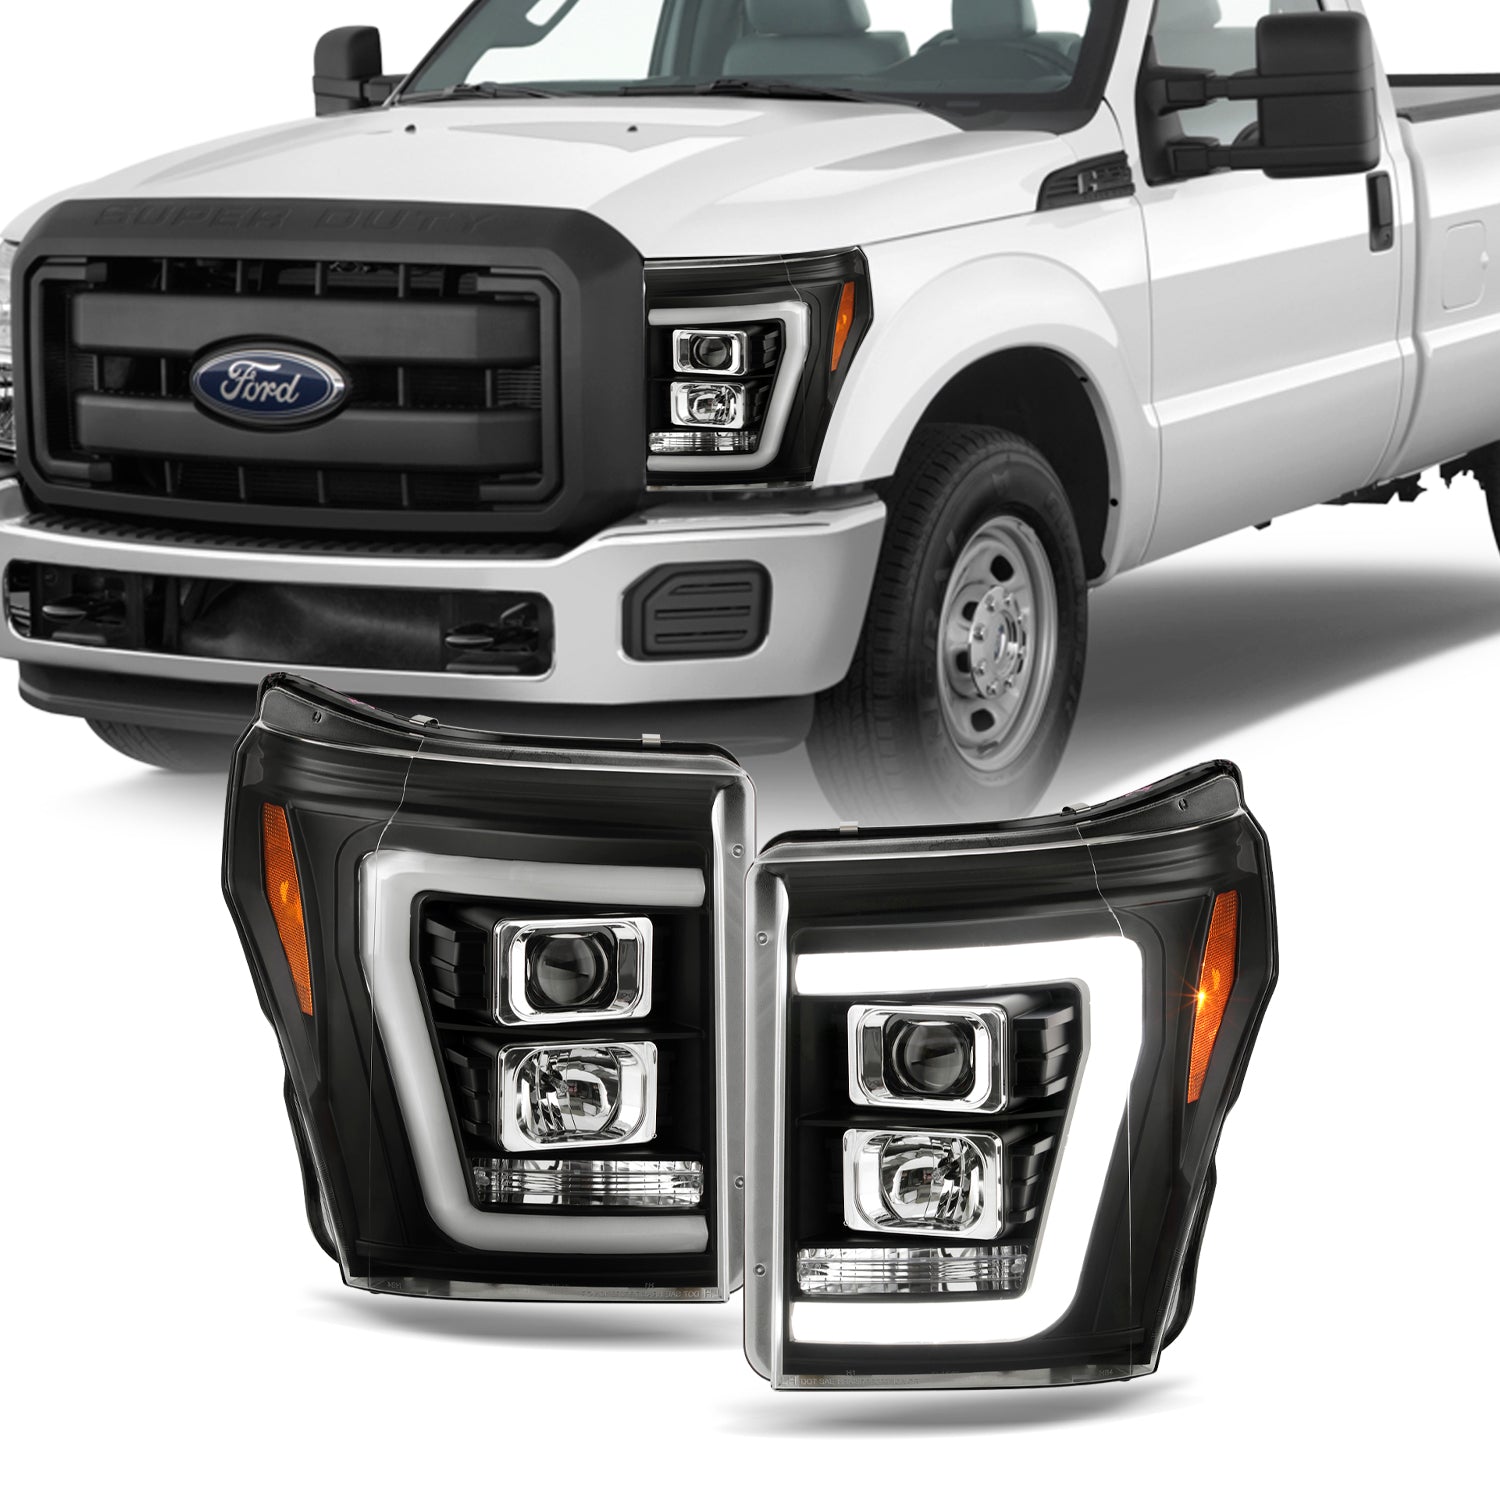 AKKON - Fits 2011-2016 Ford F250/F350/F450/F550 Super Duty LED Parking